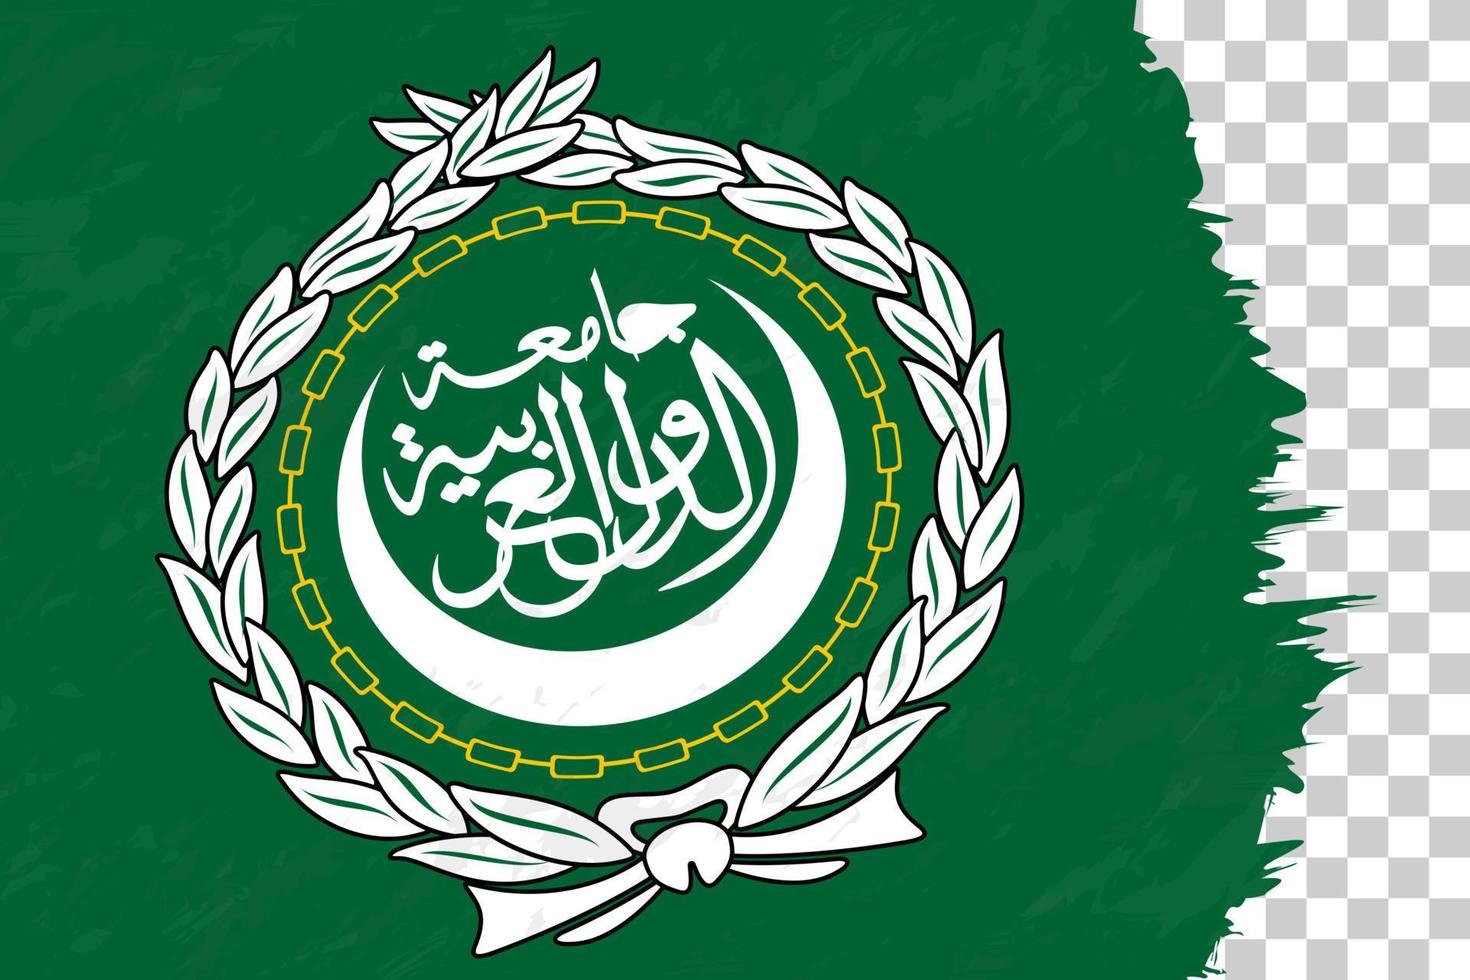 horizontale abstrakte grunge gebürstete flagge der arabischen liga auf transparentem gitter. vektor